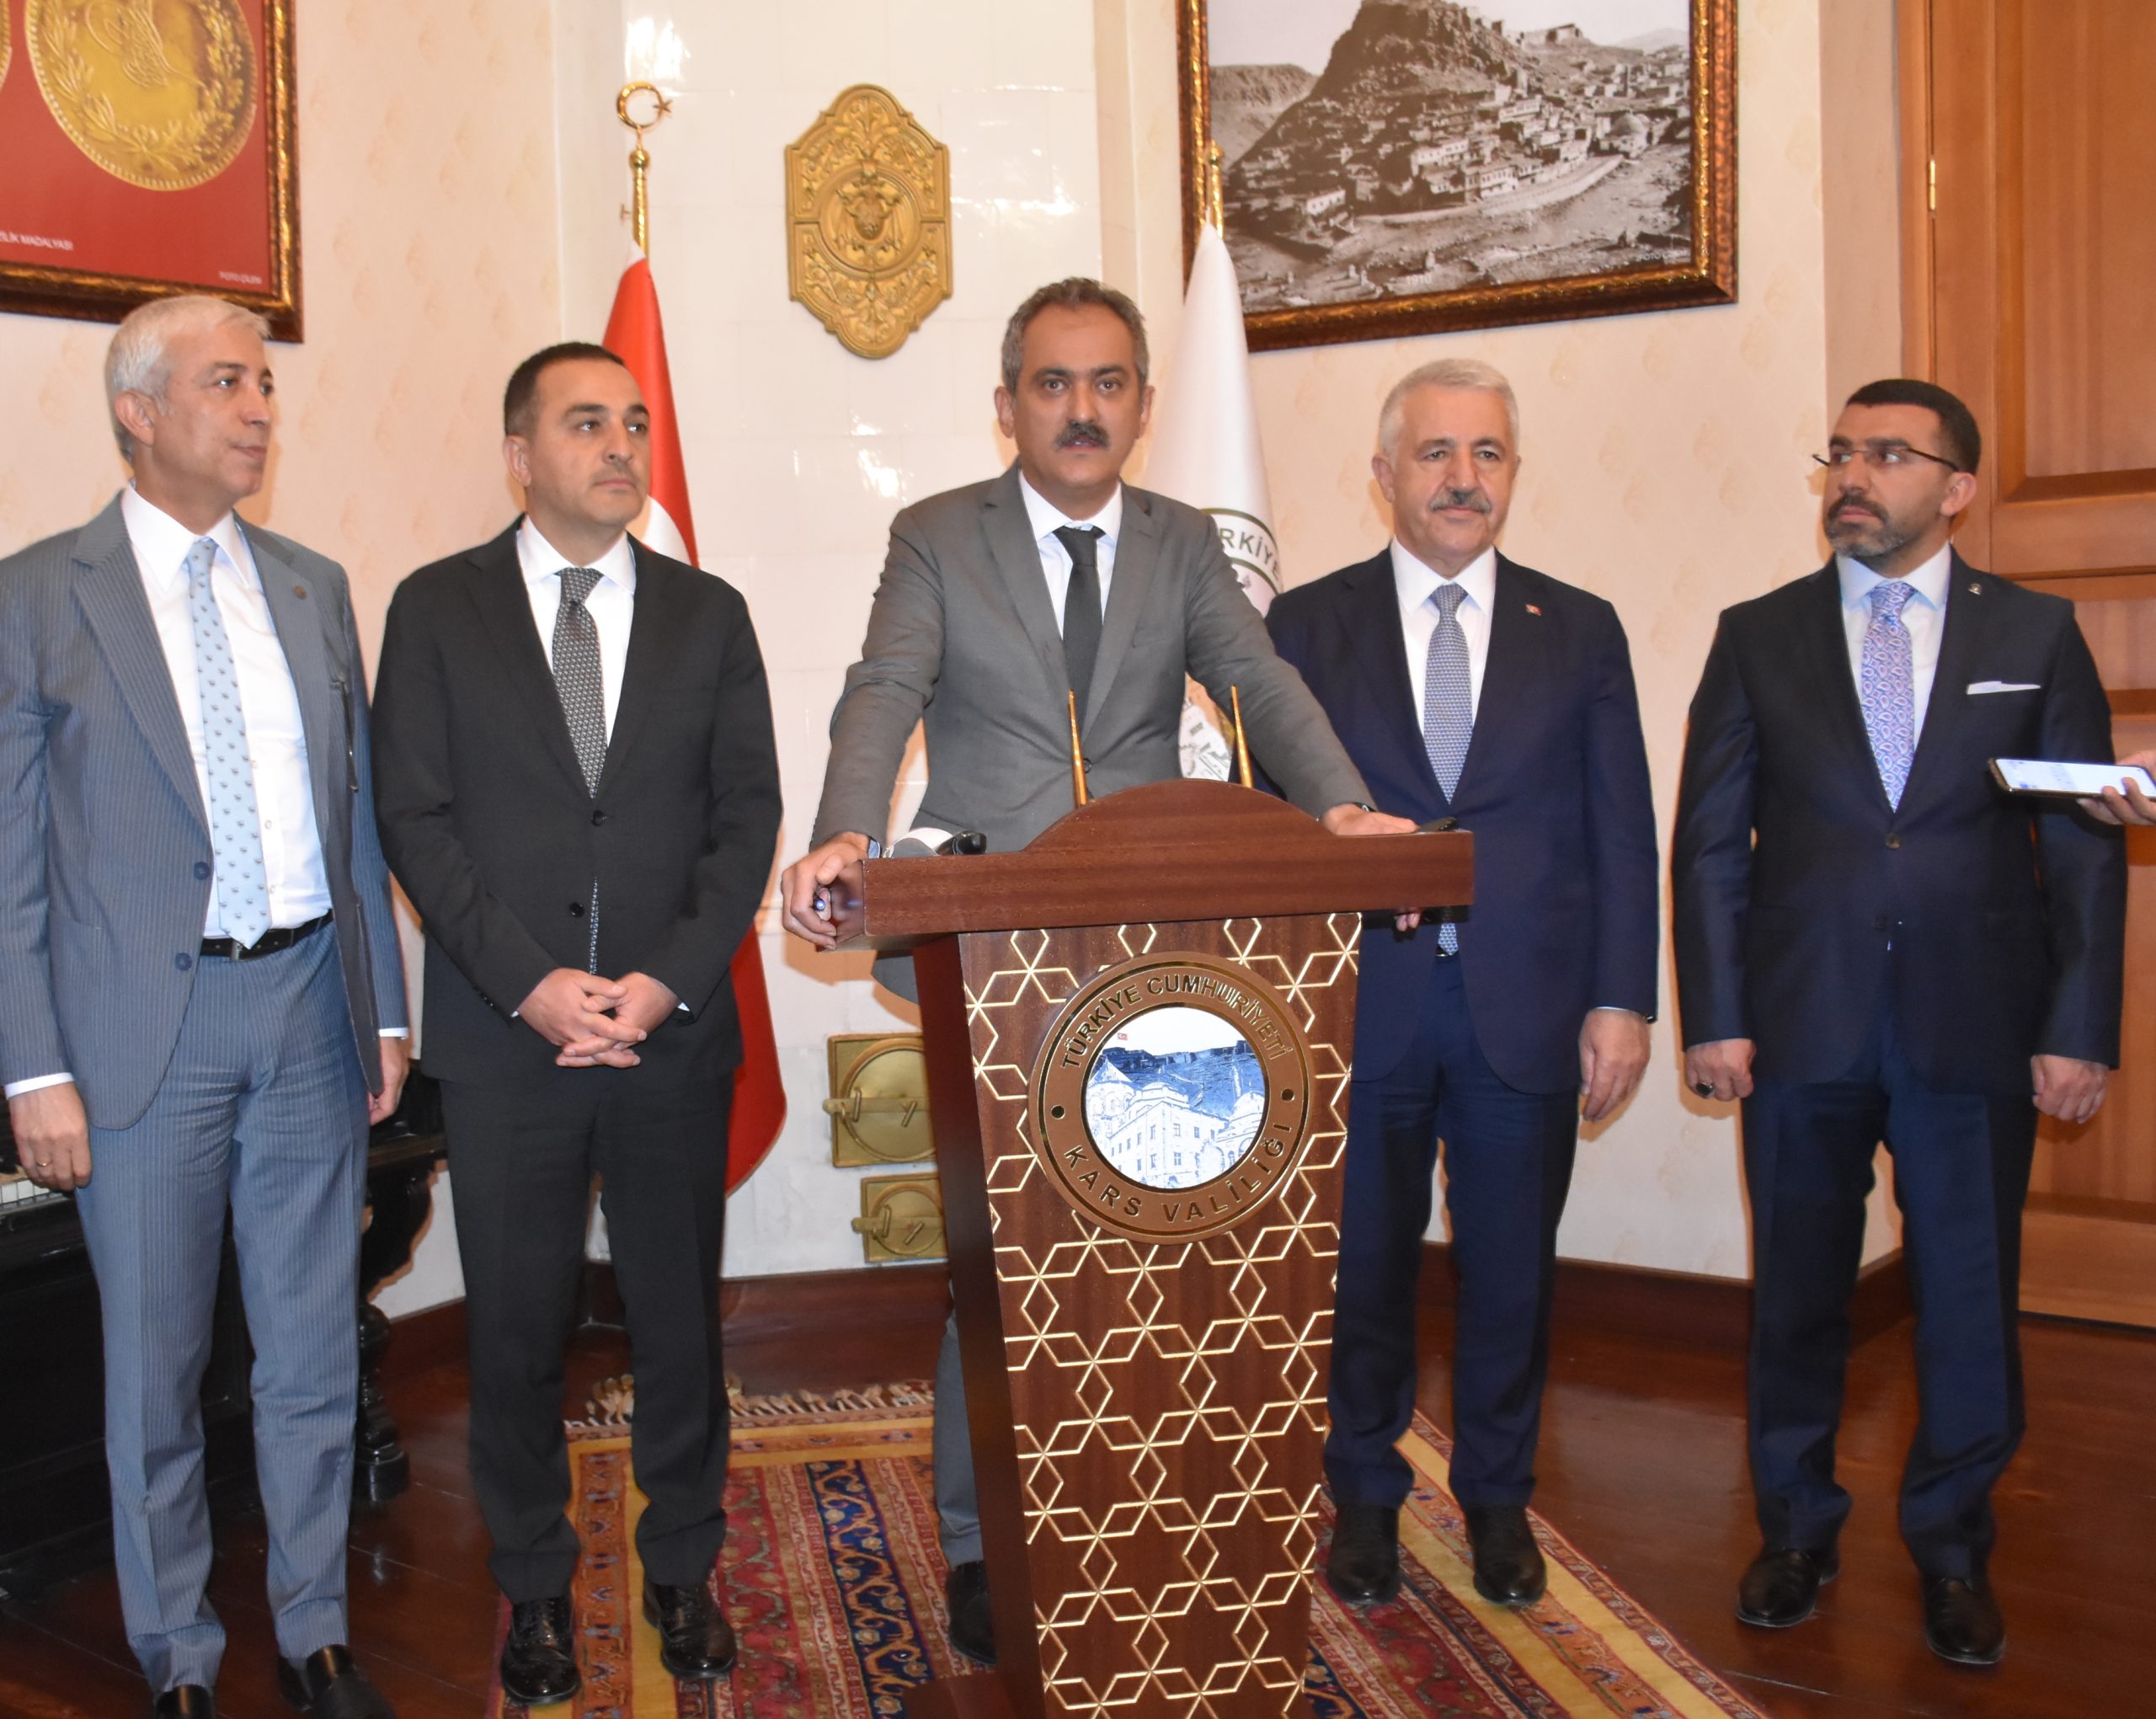 Milli Eğitim Bakanı Mahmut Özer: Kars’ta eğitimde yepyeni sayfalar açacağız